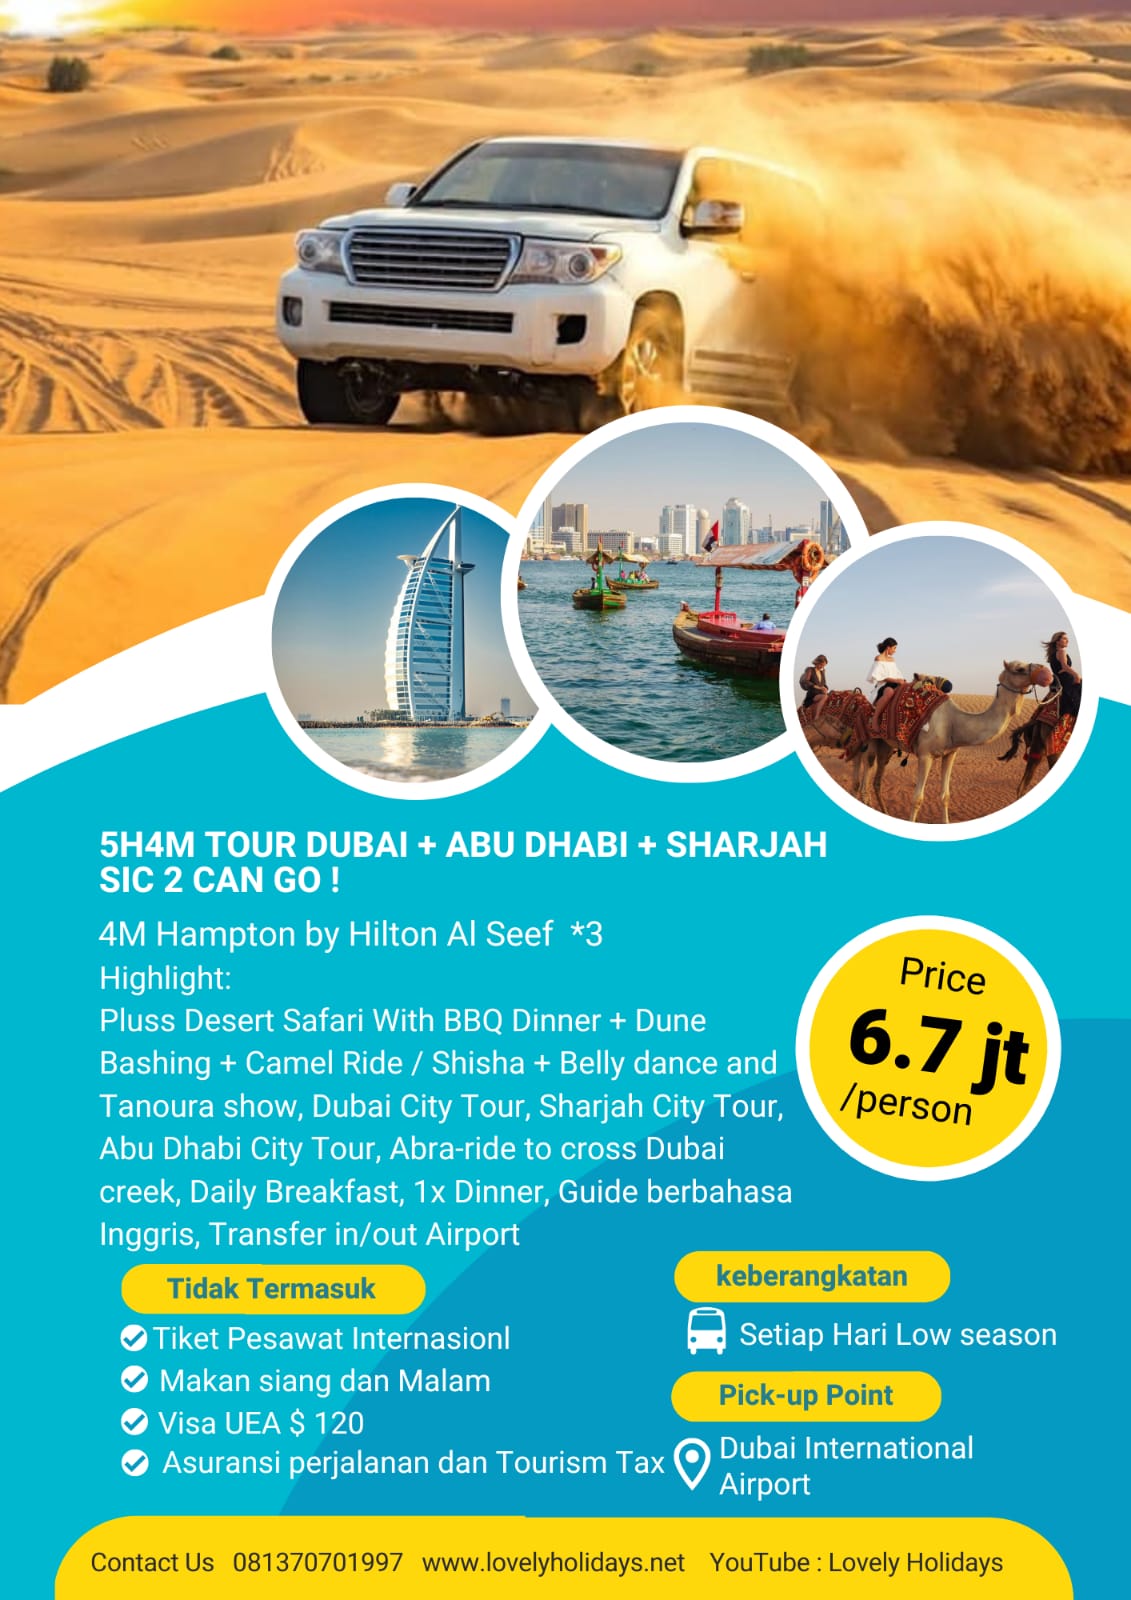 5H4M TOUR DUBAI + ABU DHABI + SHARJAH SIC